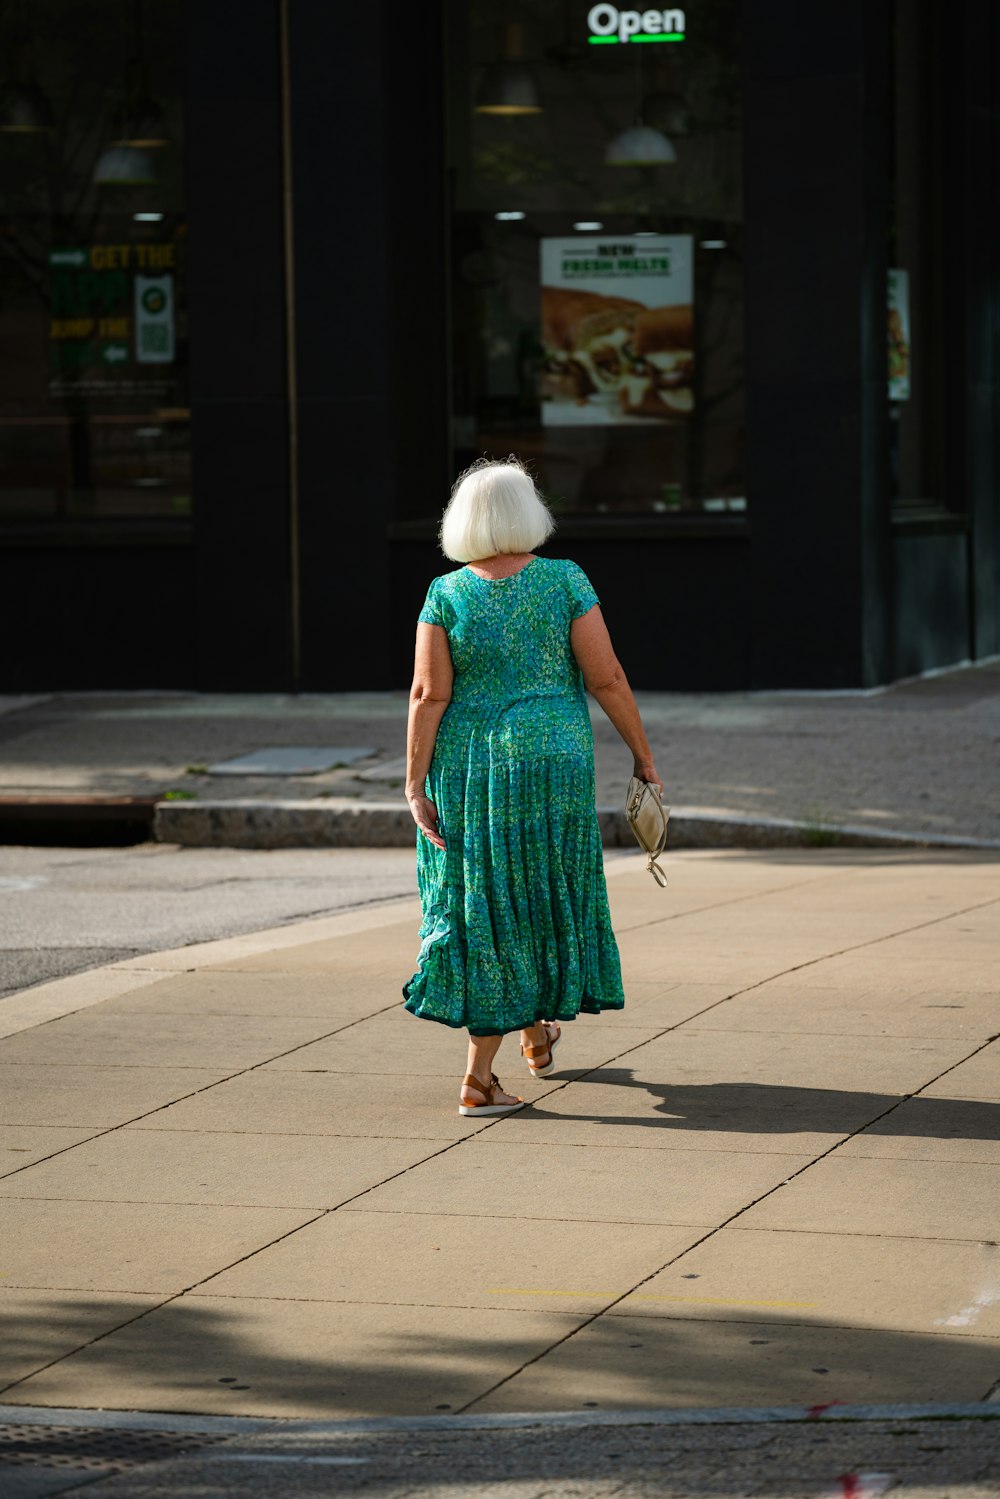 Eine Frau in einem grünen Kleid geht die Straße entlang